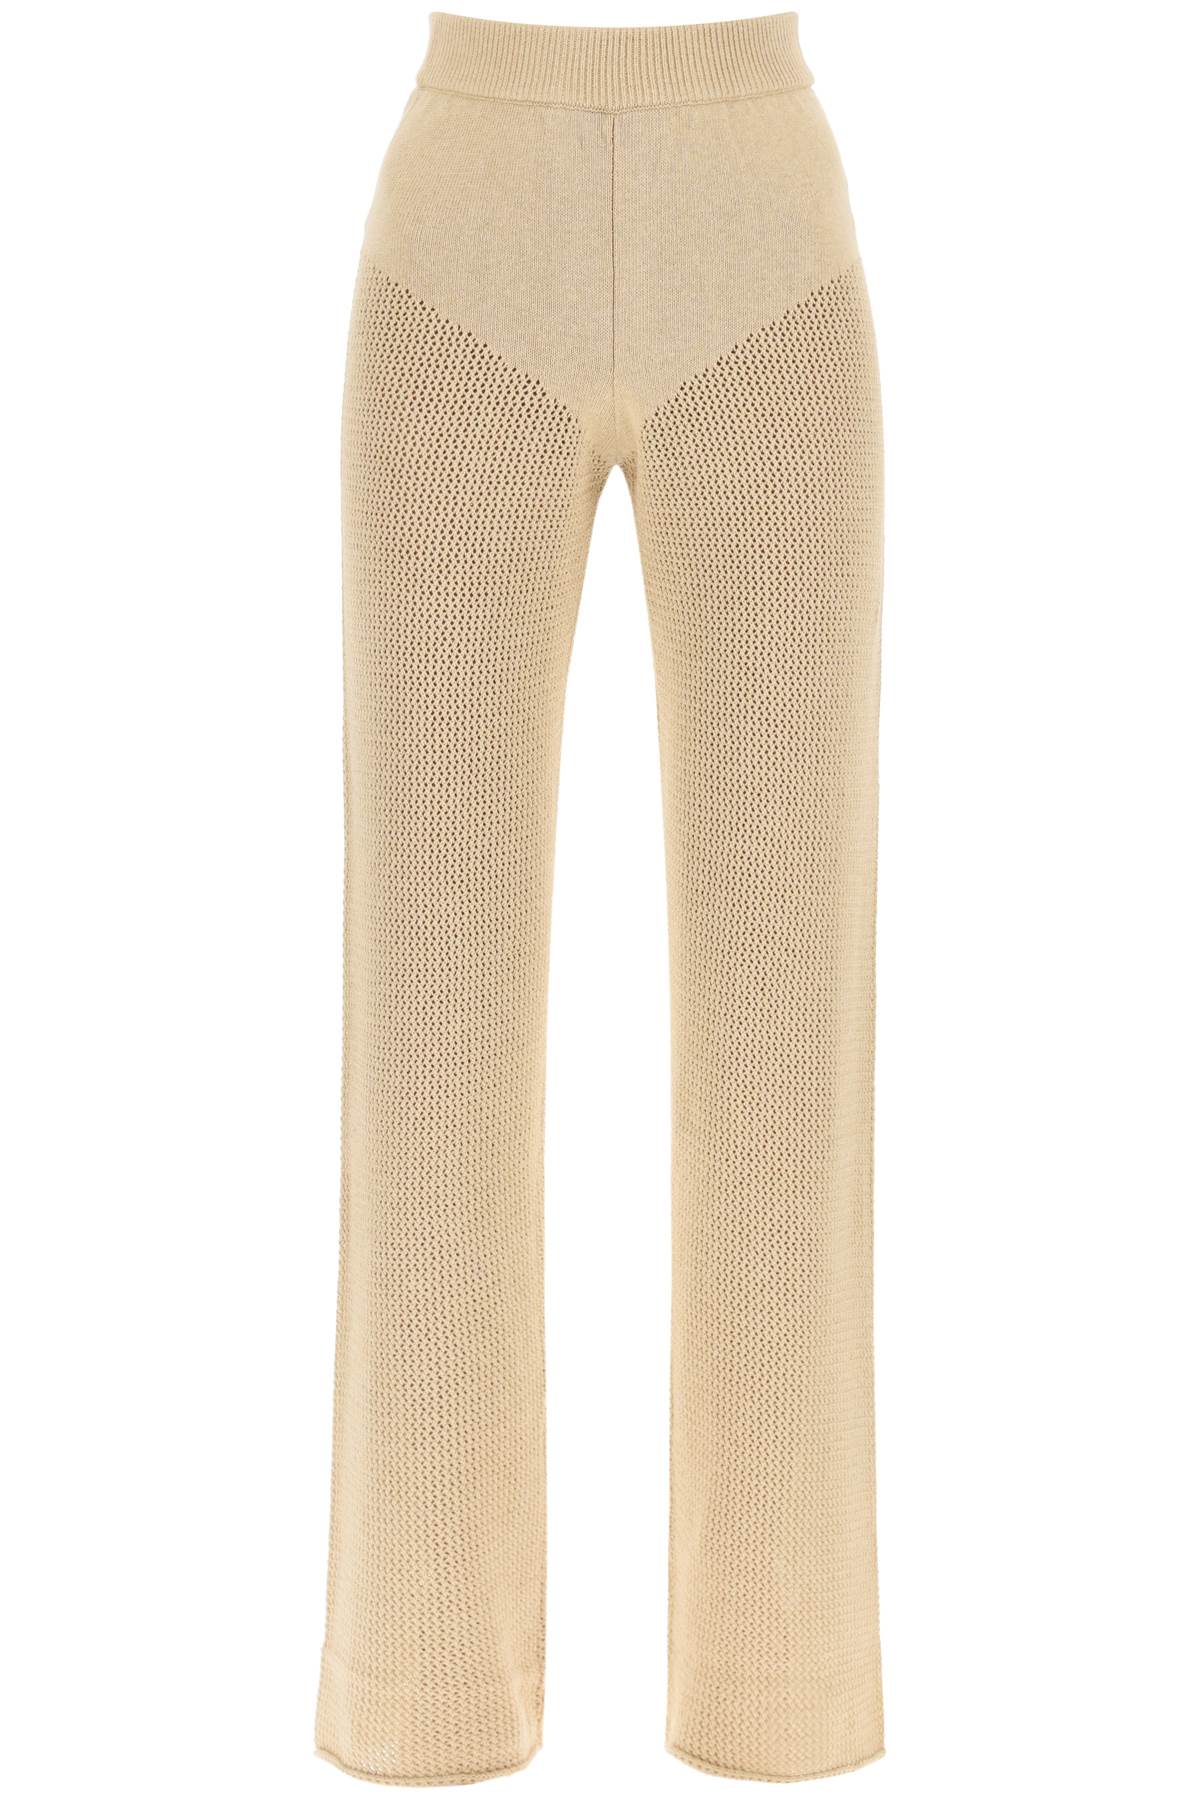 Shop Mvp Wardrobe Cambria Openwork Pants In Nude (beige)